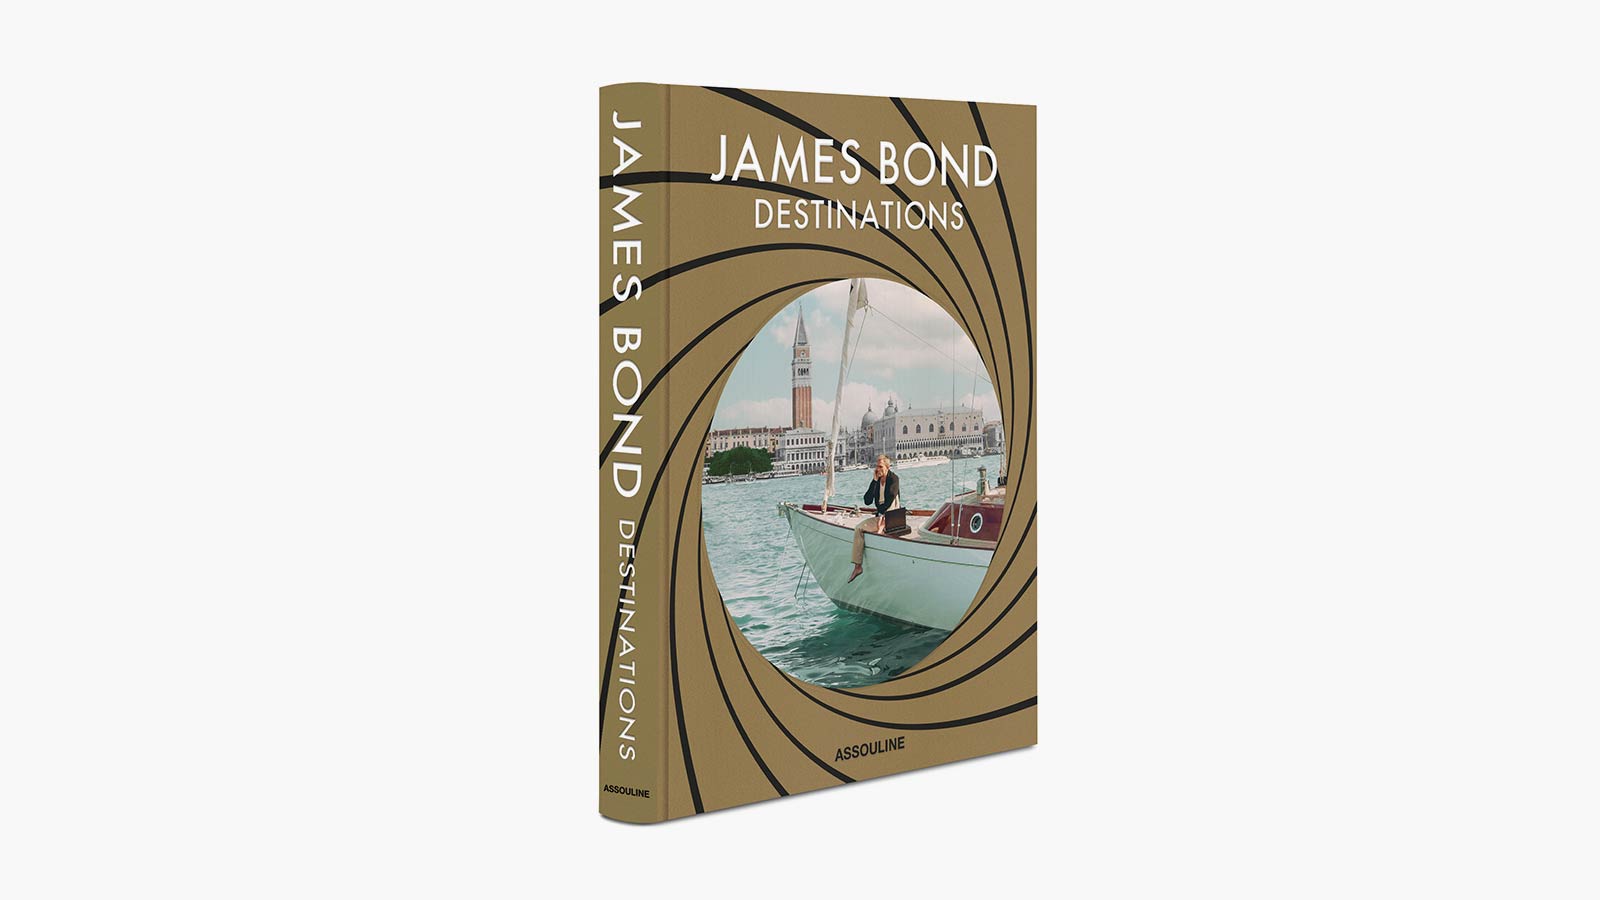 'James Bond Destinations' by Daniel Pembrey